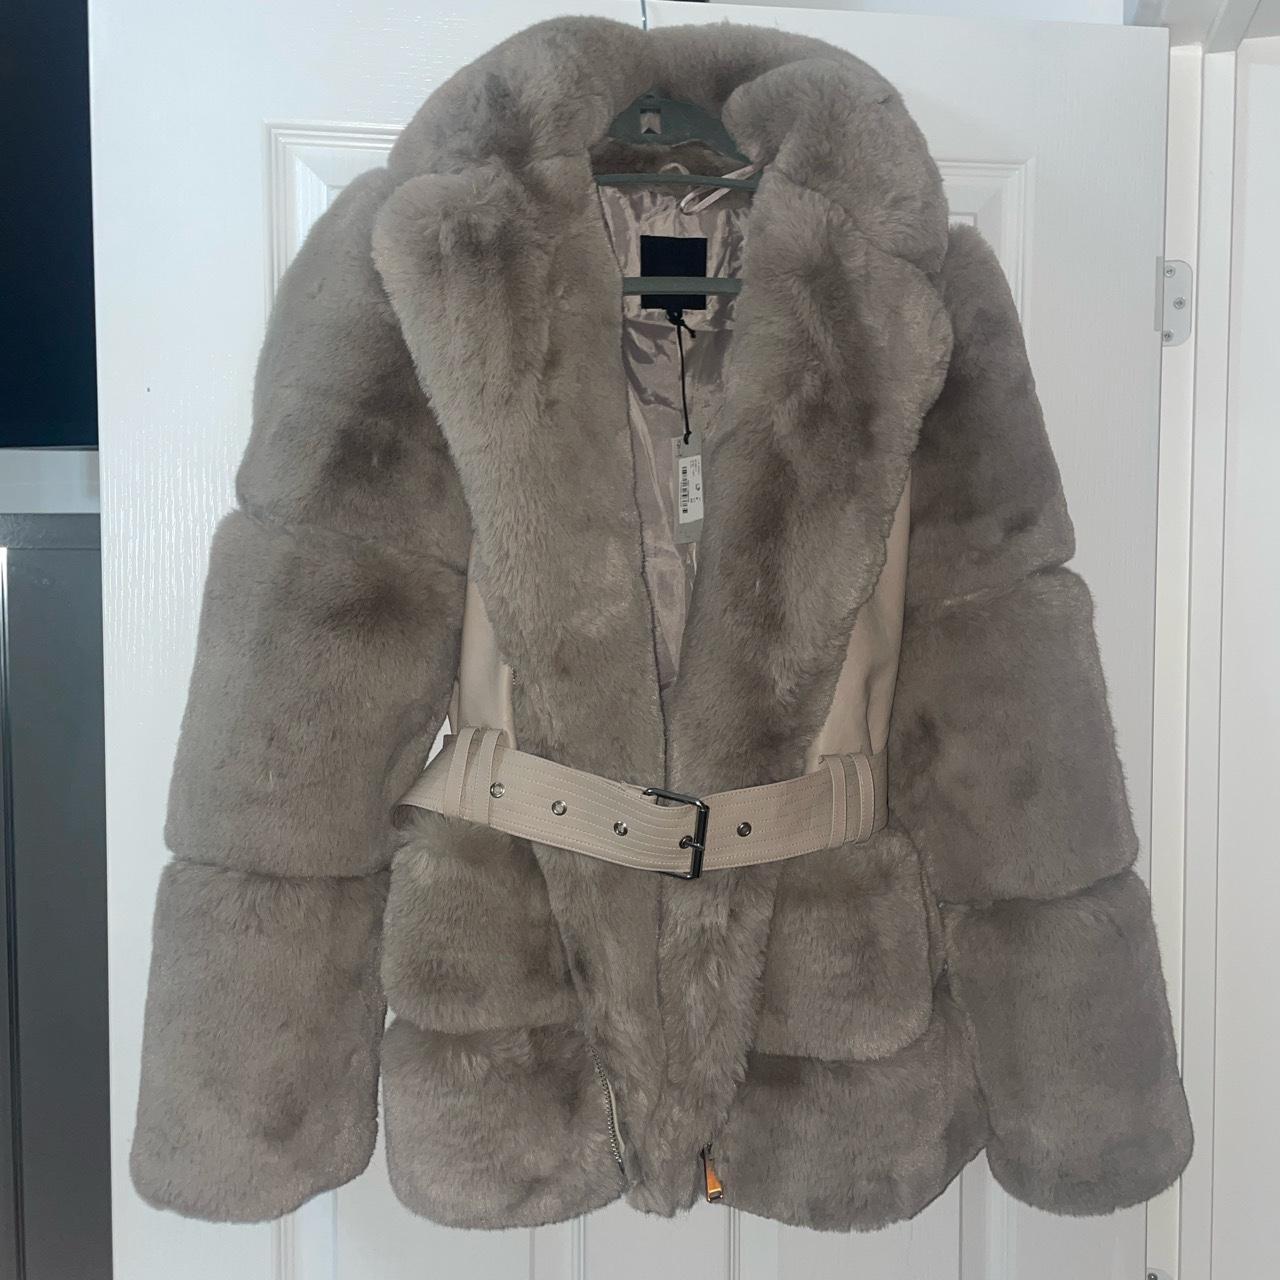 Beige fur coat with belt, zips up too Size 8 Brand... - Depop